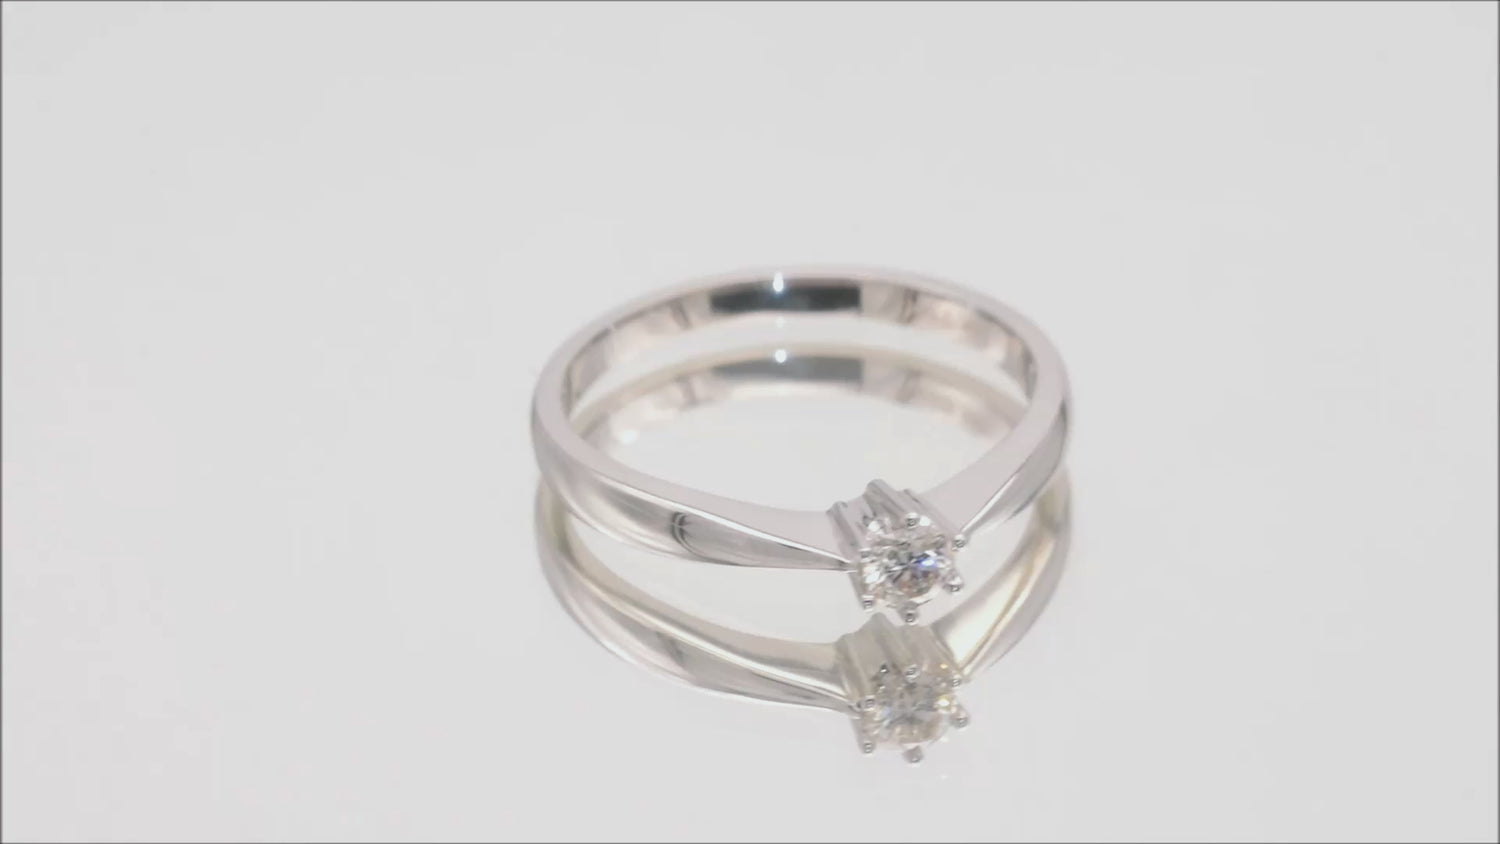 Verlobungsring Solitär mit 0,15ct Diamant in 750 (18K) Weißgold 6-Krappenfassung Video